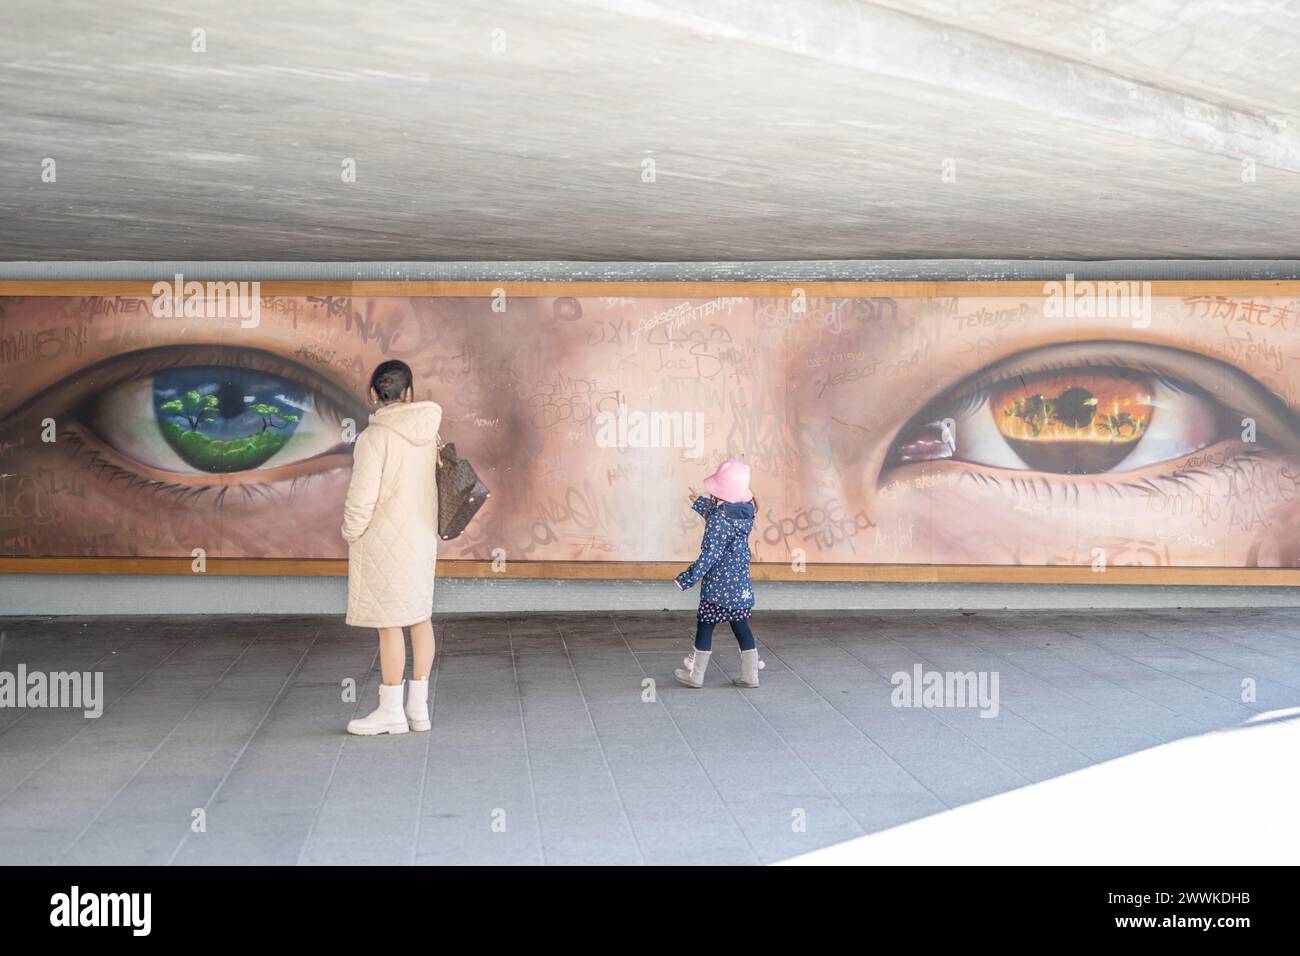 Beschreibung: Frau mit Tochter betrachtet Konstanzer Urban Art zum Thema 'Blick in die Zukunft zum Klimawechsel liegt in unserer Verantwortung'. Kons Foto Stock